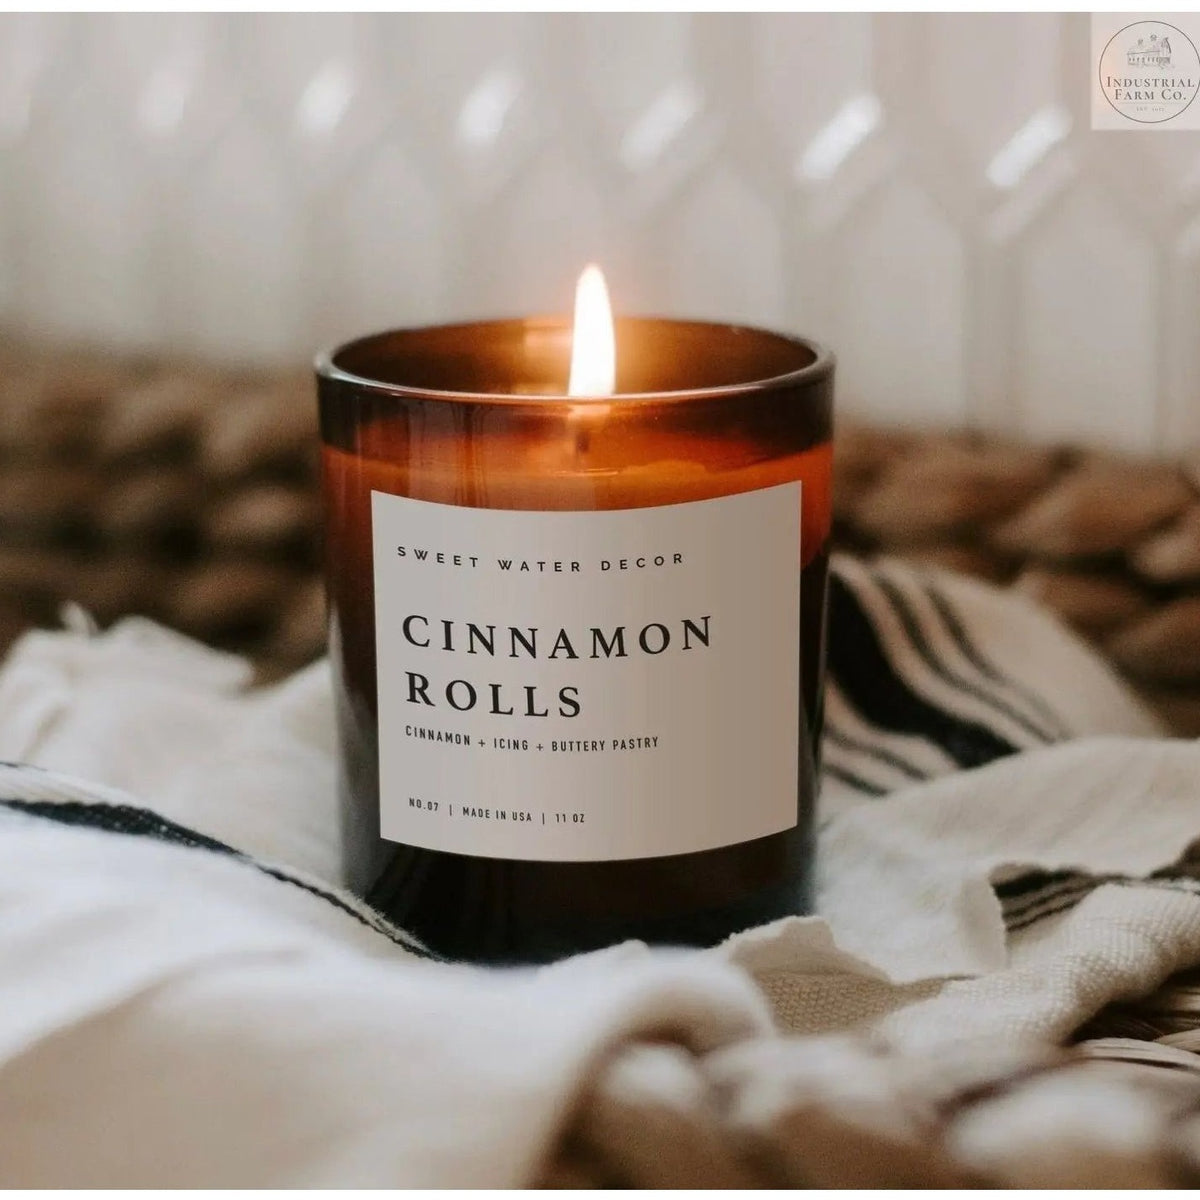 Cinnamon Rolls Soy Candle  White Jar   | Industrial Farm Co